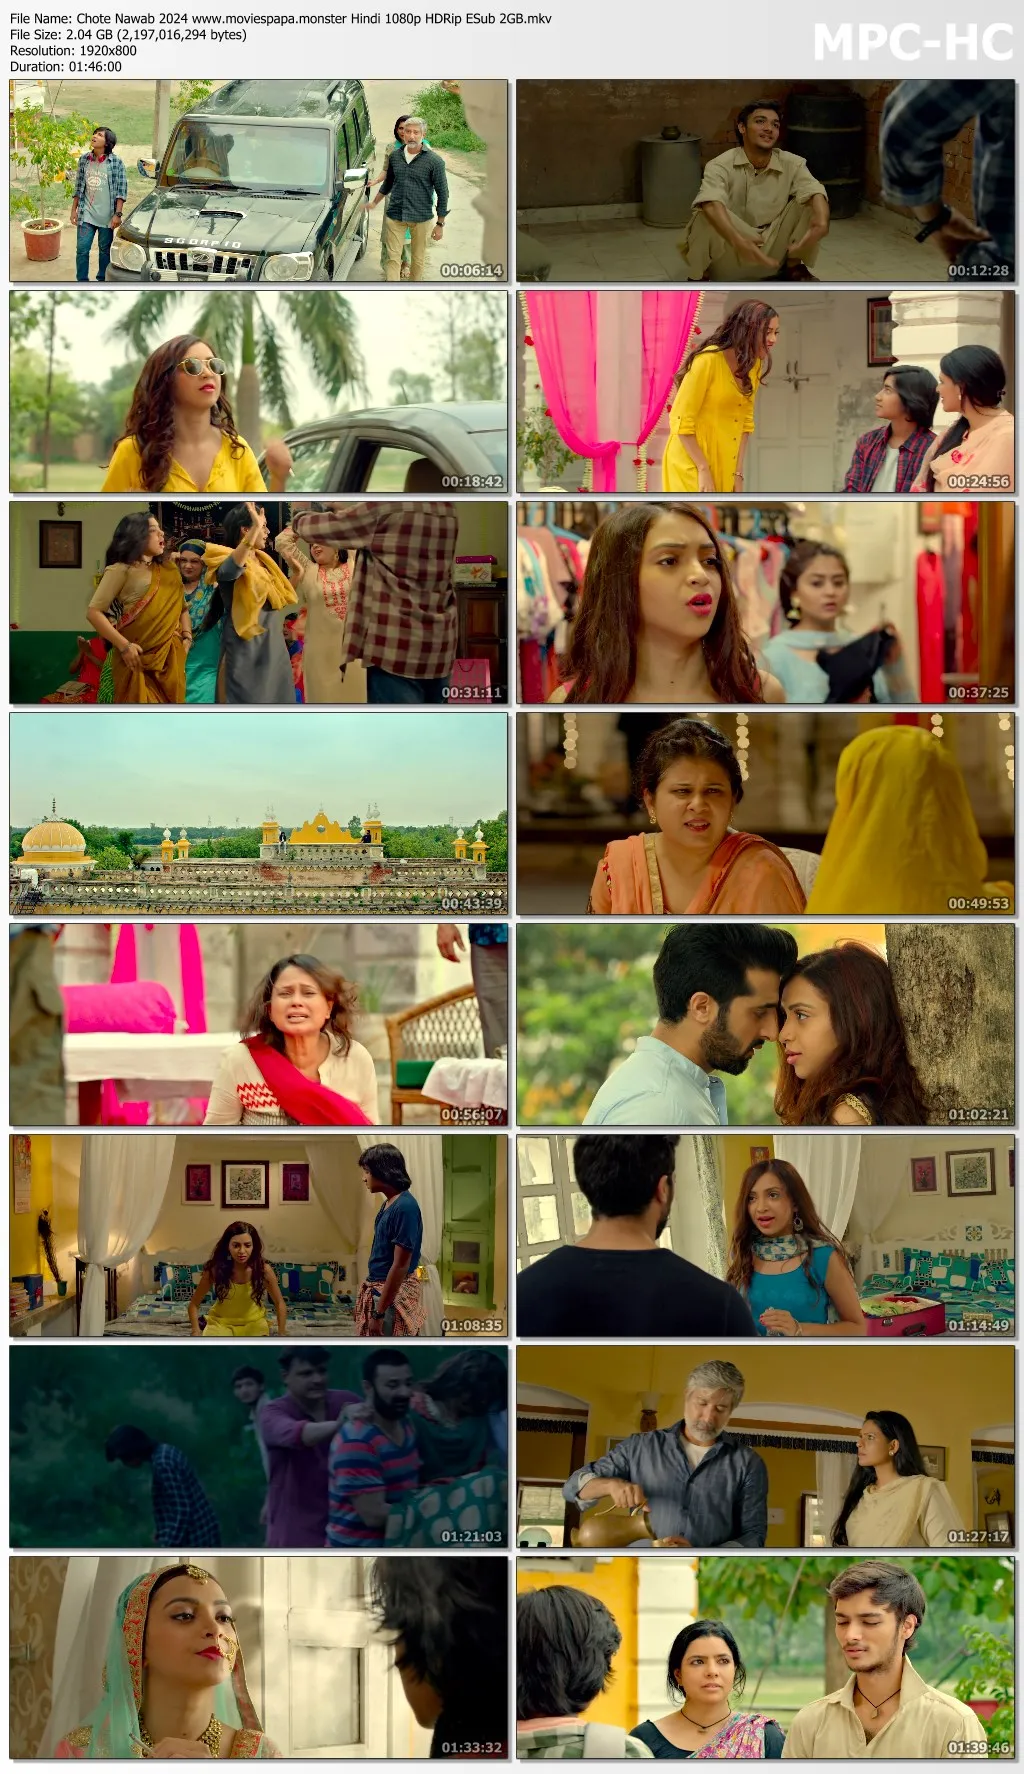 Chote Nawab 2024 Hindi 1080p | 720p | 480p HDRip ESub Download